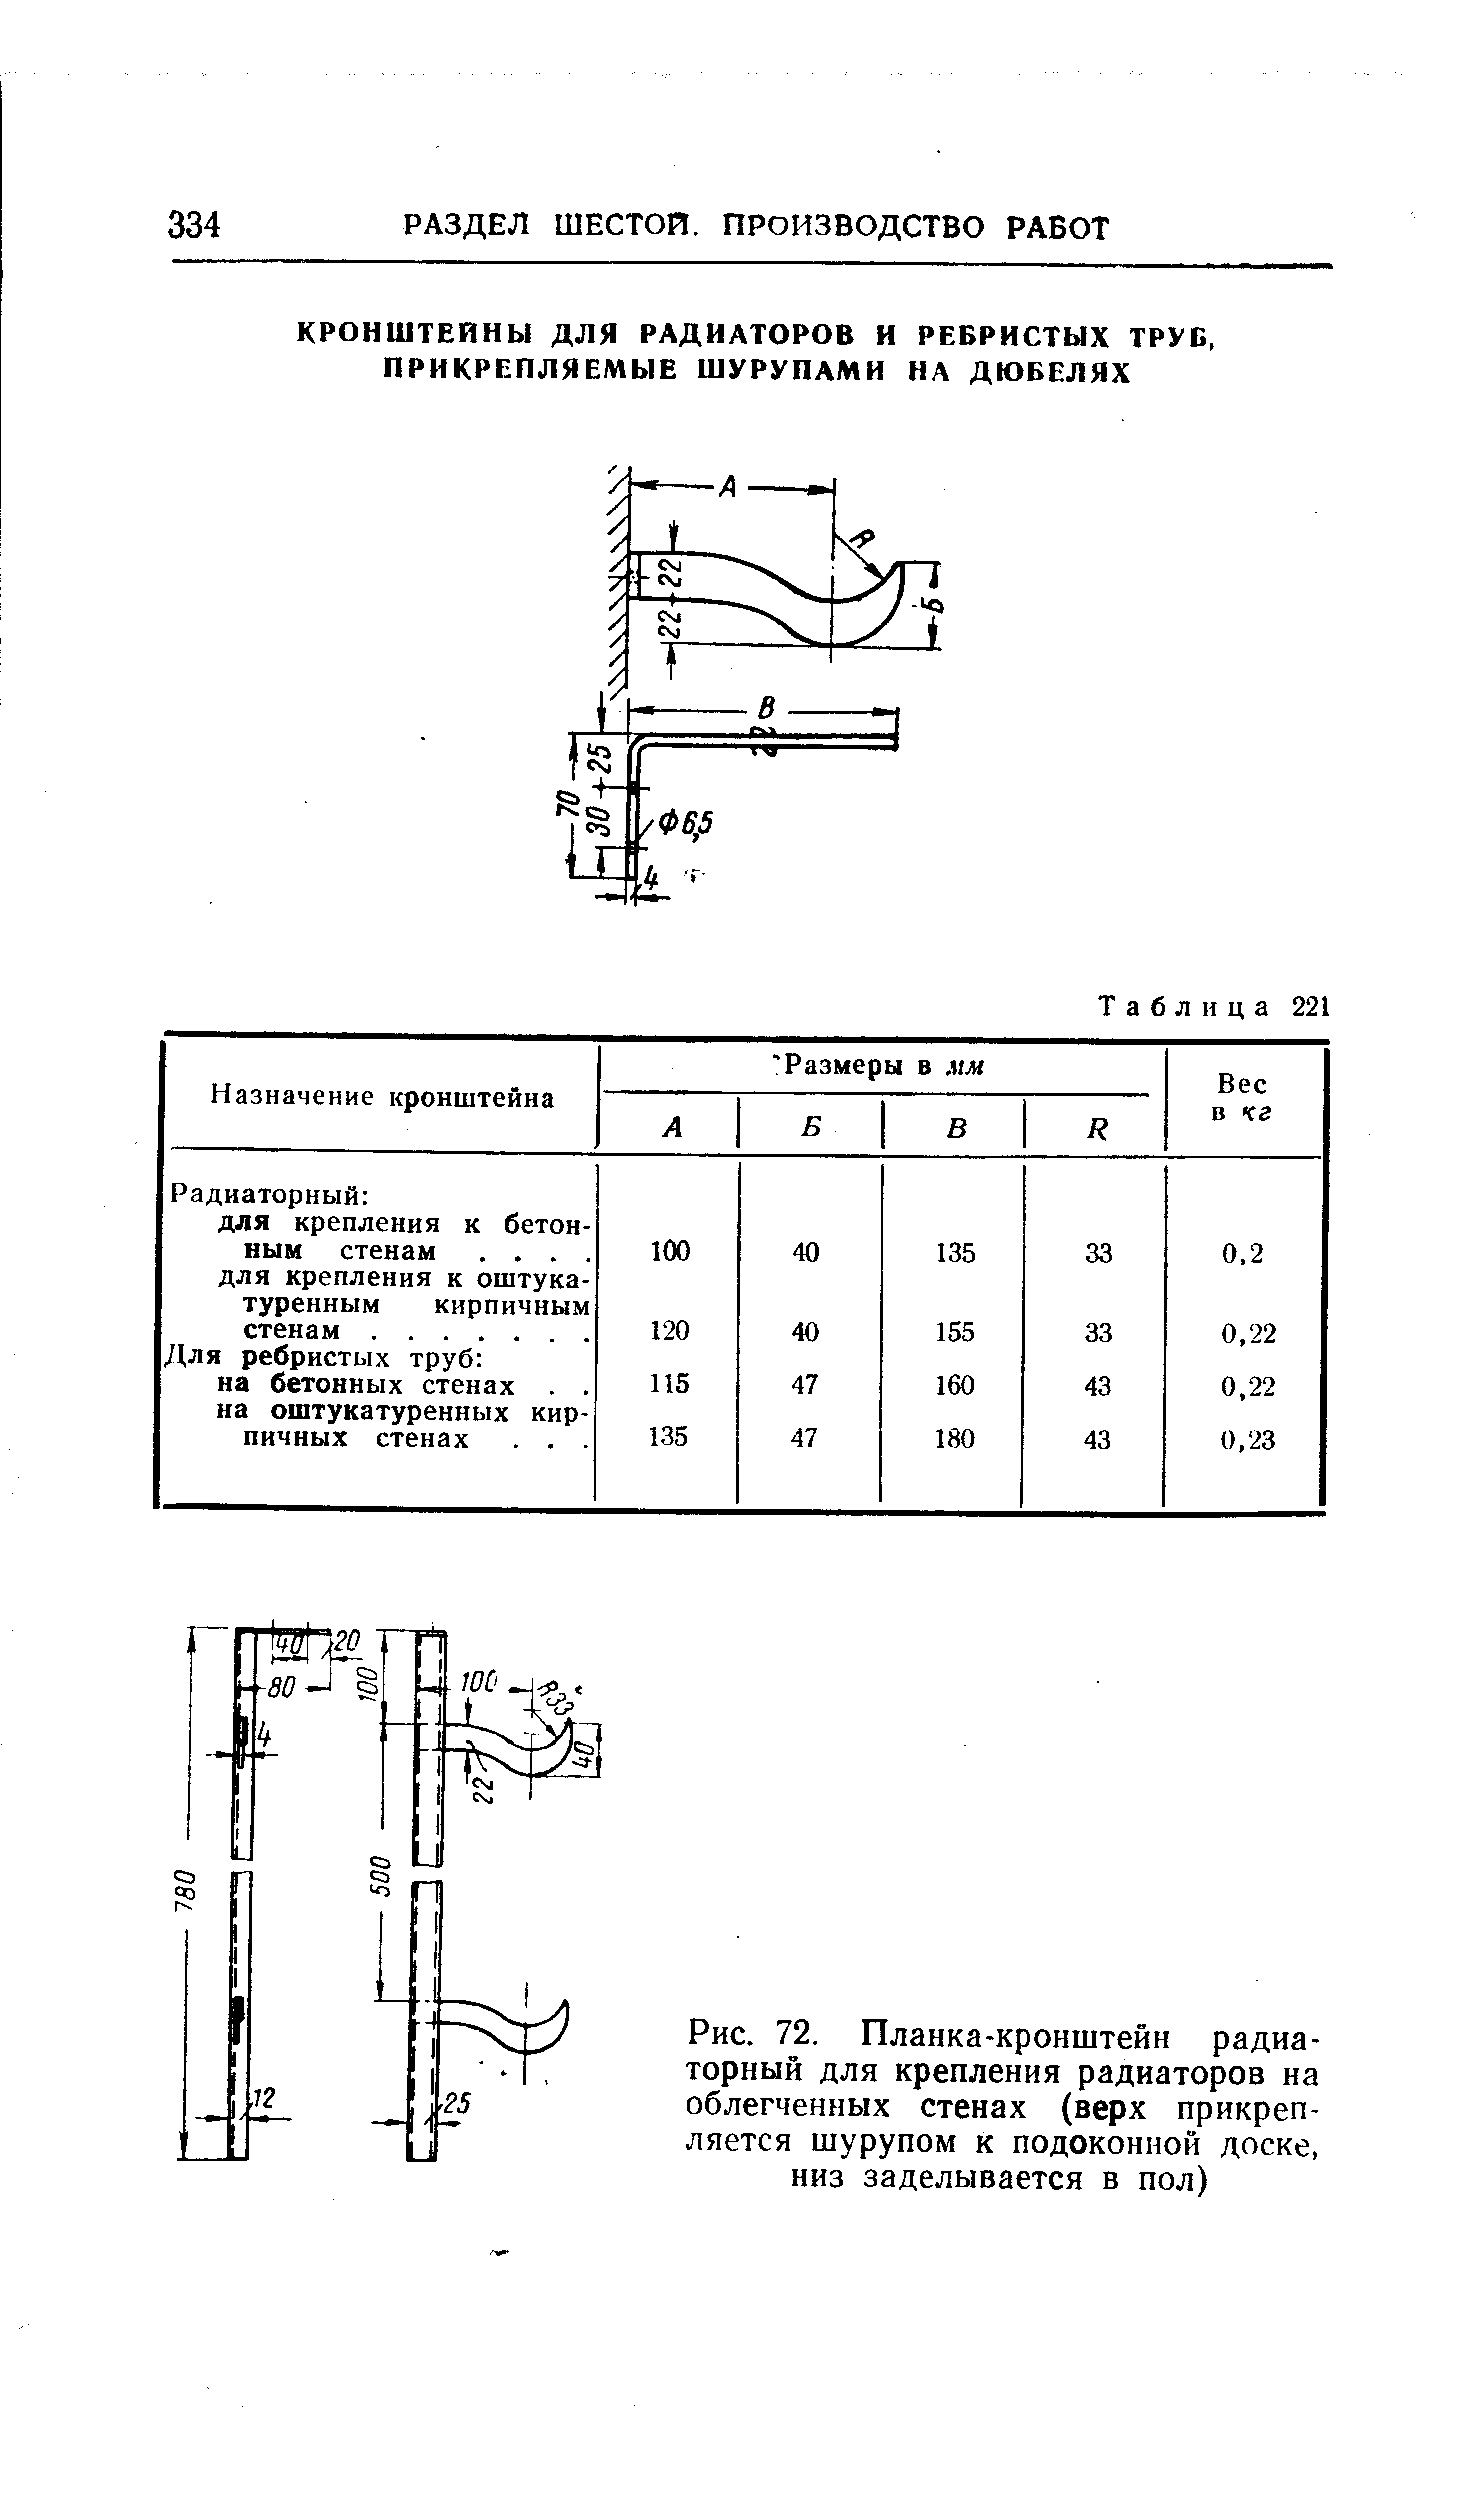 Рис. 72. Планка-кронштейн радиаторный для крепления радиаторов на облегченных стенах (верх прикрепляется шурупом к подоконной доске, низ заделывается в пол)
